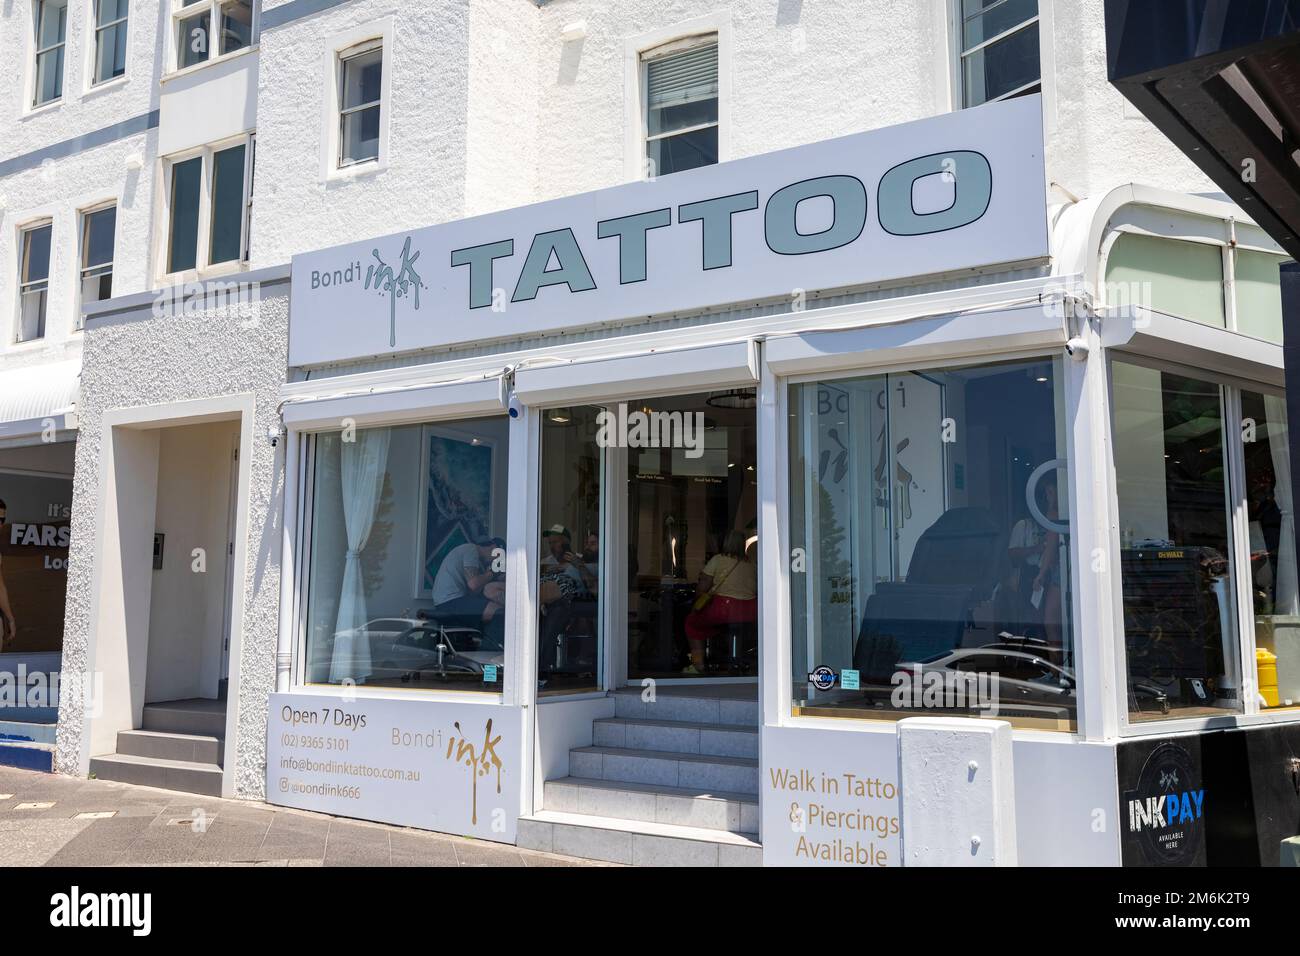 Salon de tatouage Bondi Beach, Bondi Ink, homme en train d'être tatoué dans la fenêtre du magasin, Bondi, Sydney, Nouvelle-Galles du Sud, Australie Banque D'Images